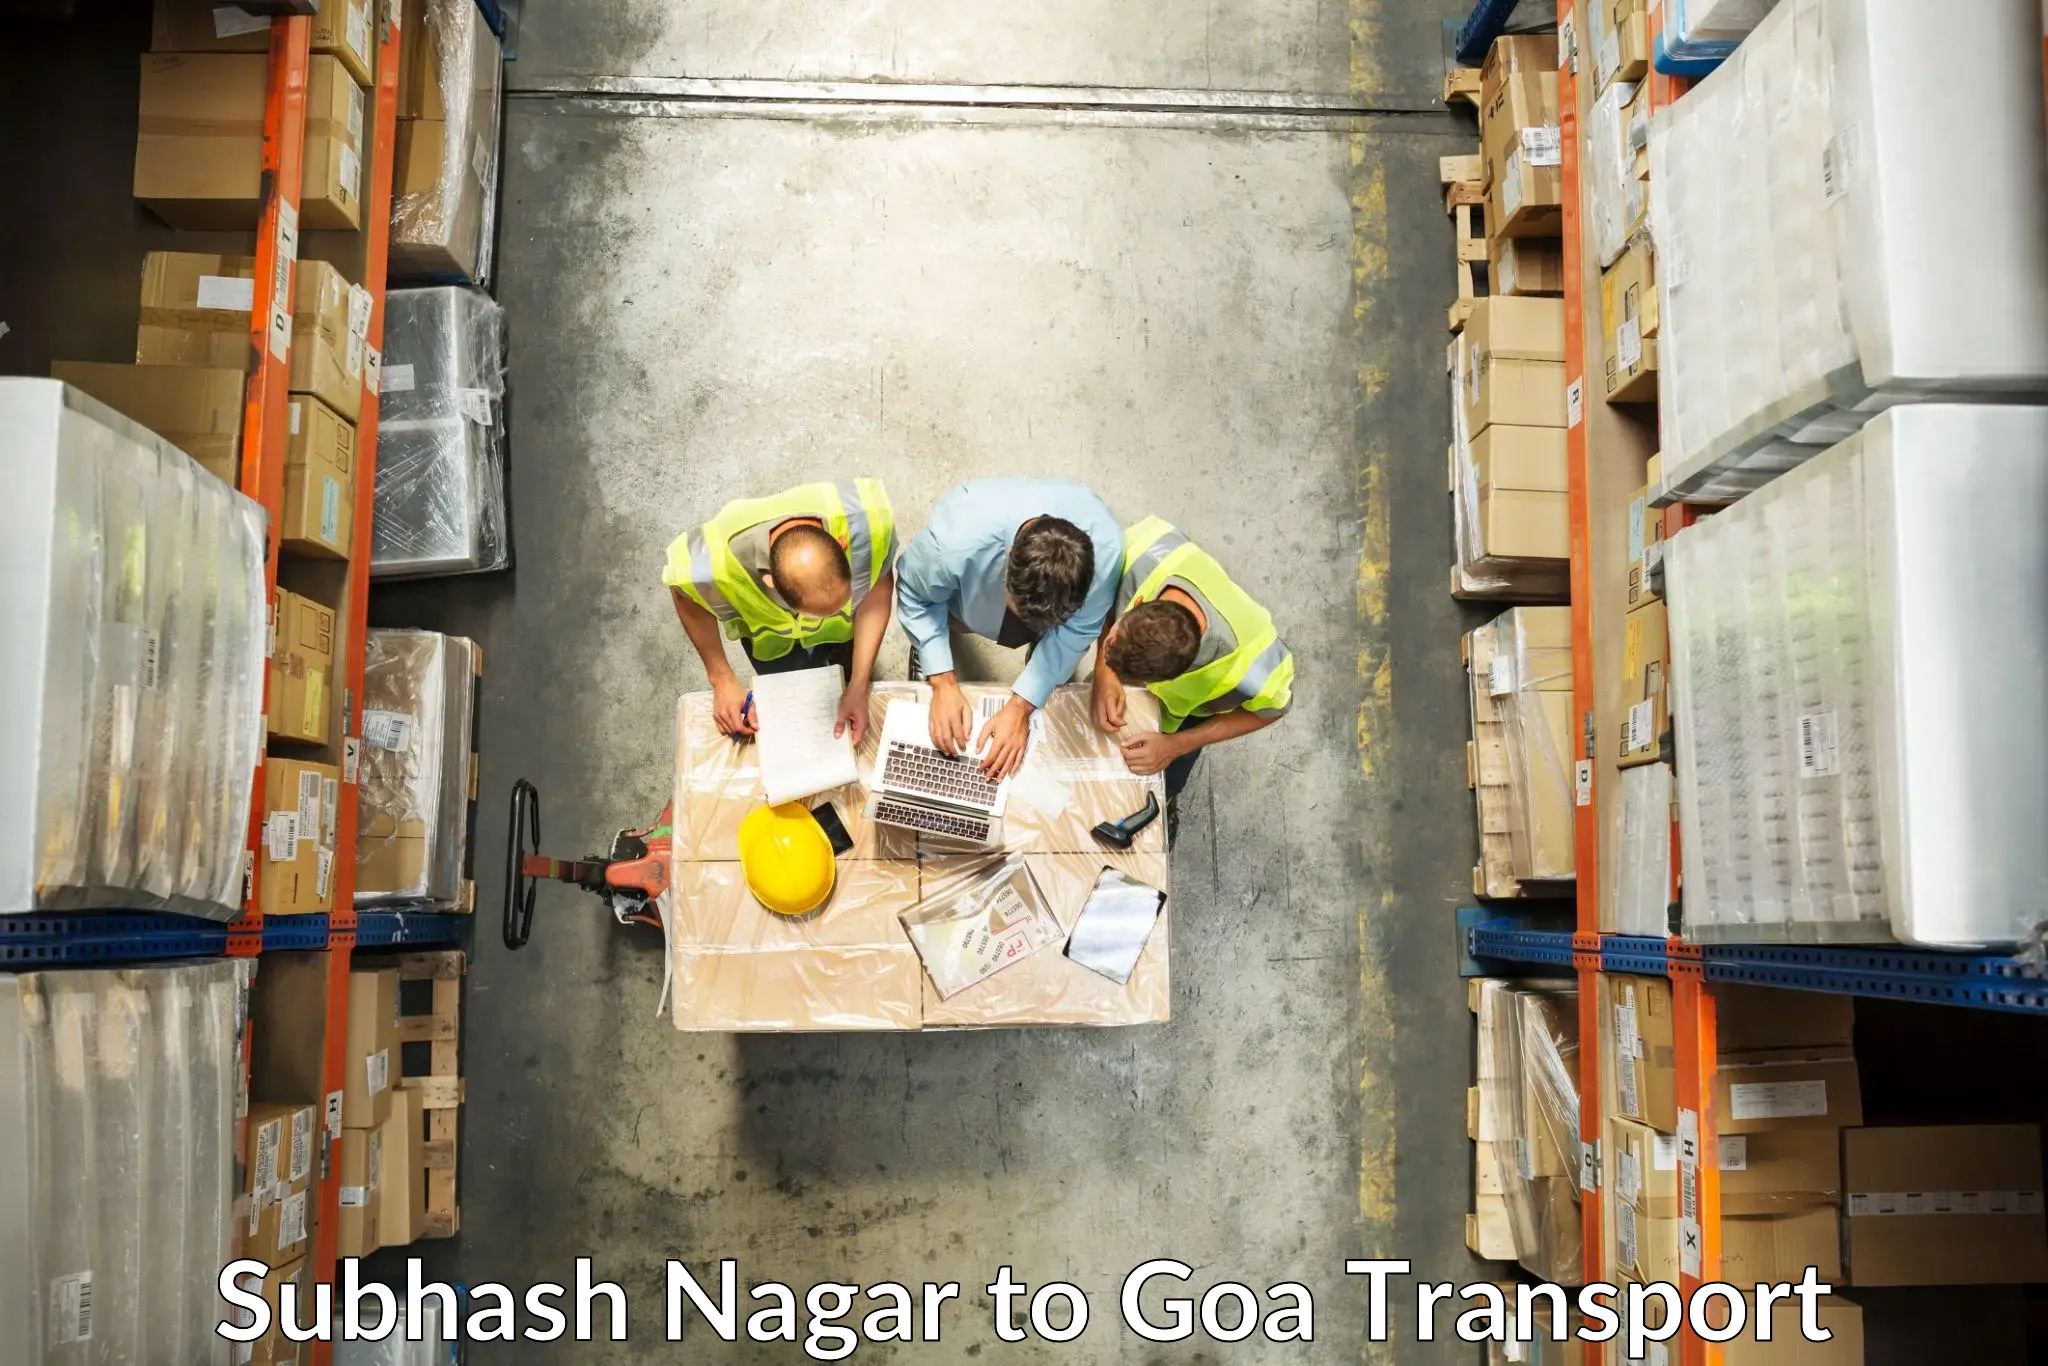 Transportation services Subhash Nagar to Mormugao Port